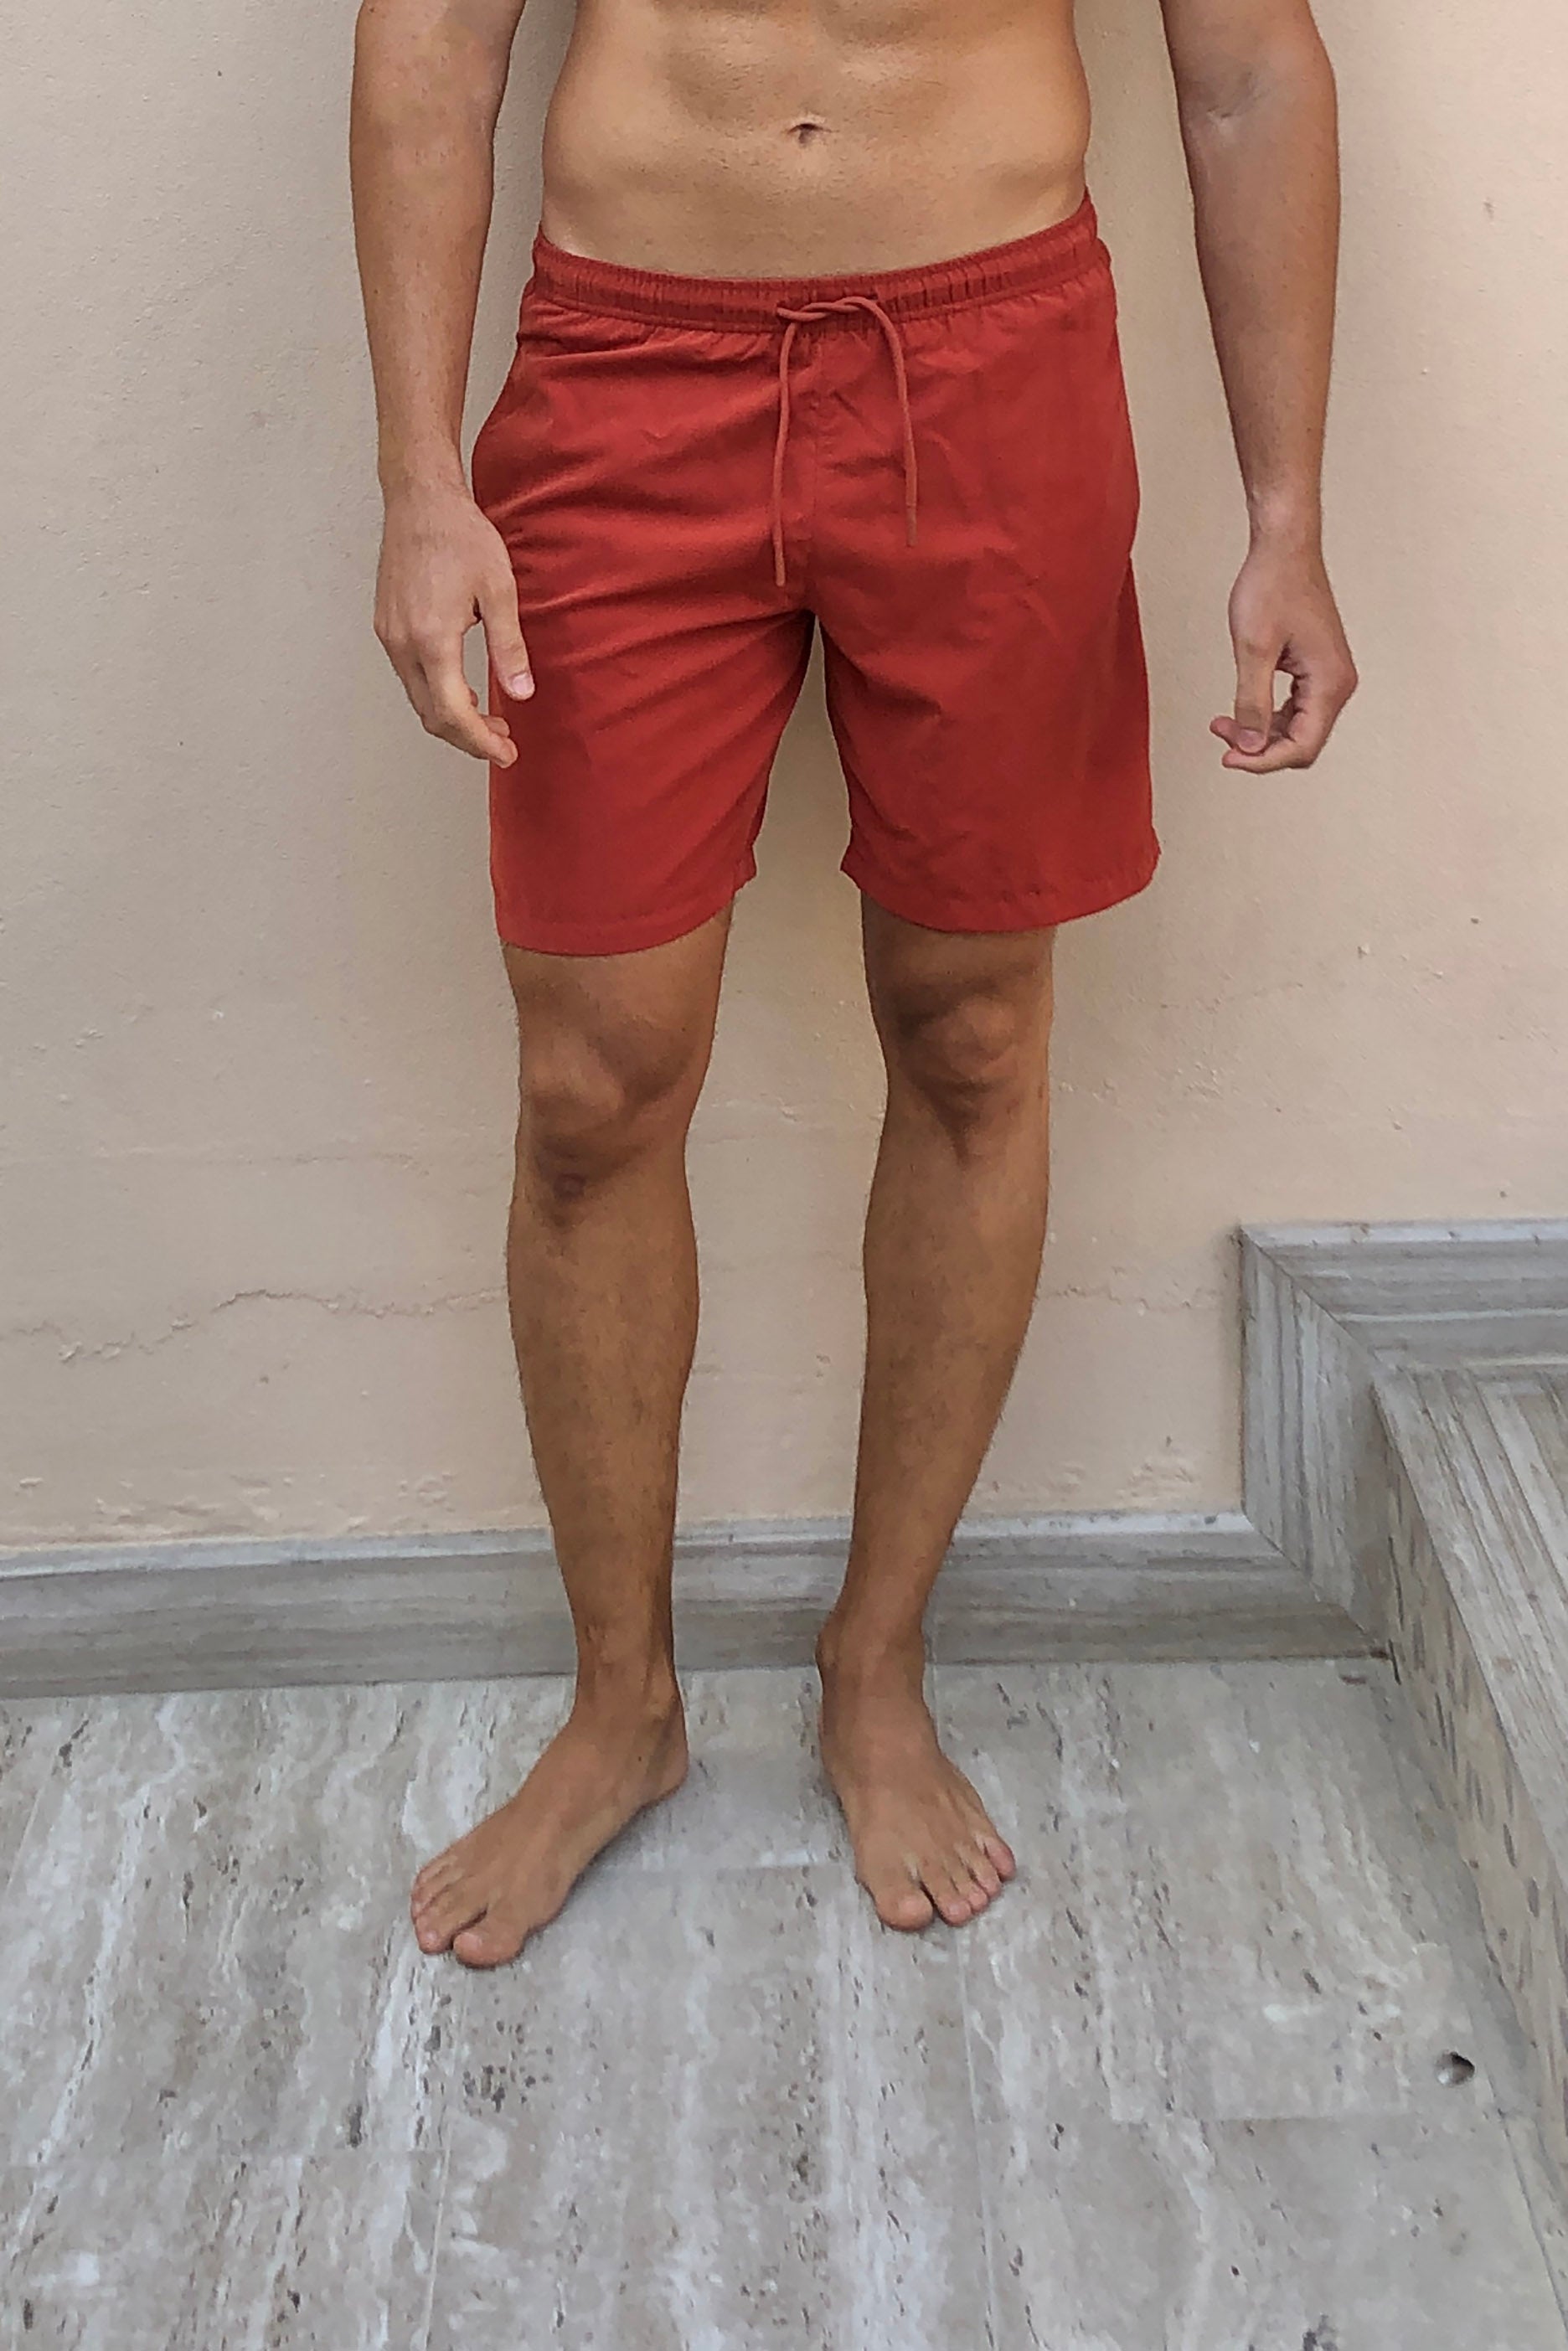 Men's Rust Red Swim Shorts (Medium)